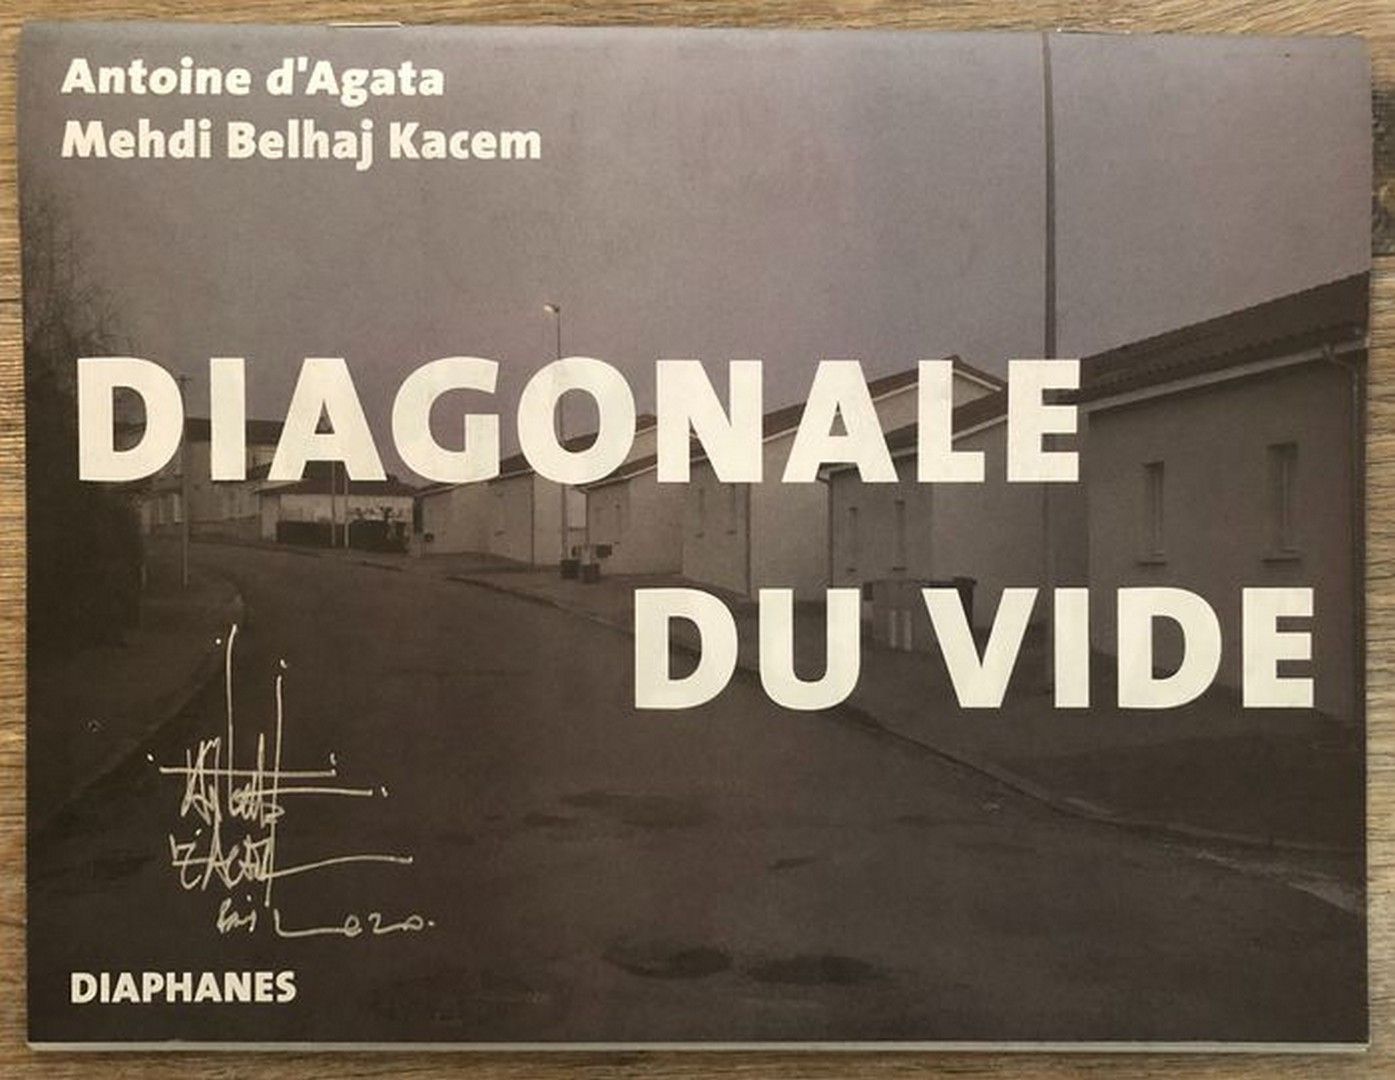 ANTOINE D'AGATA 1961- ANTOINE D'AGATA 1961-
"Diagonale du vide", Diaphanes, 2019&hellip;